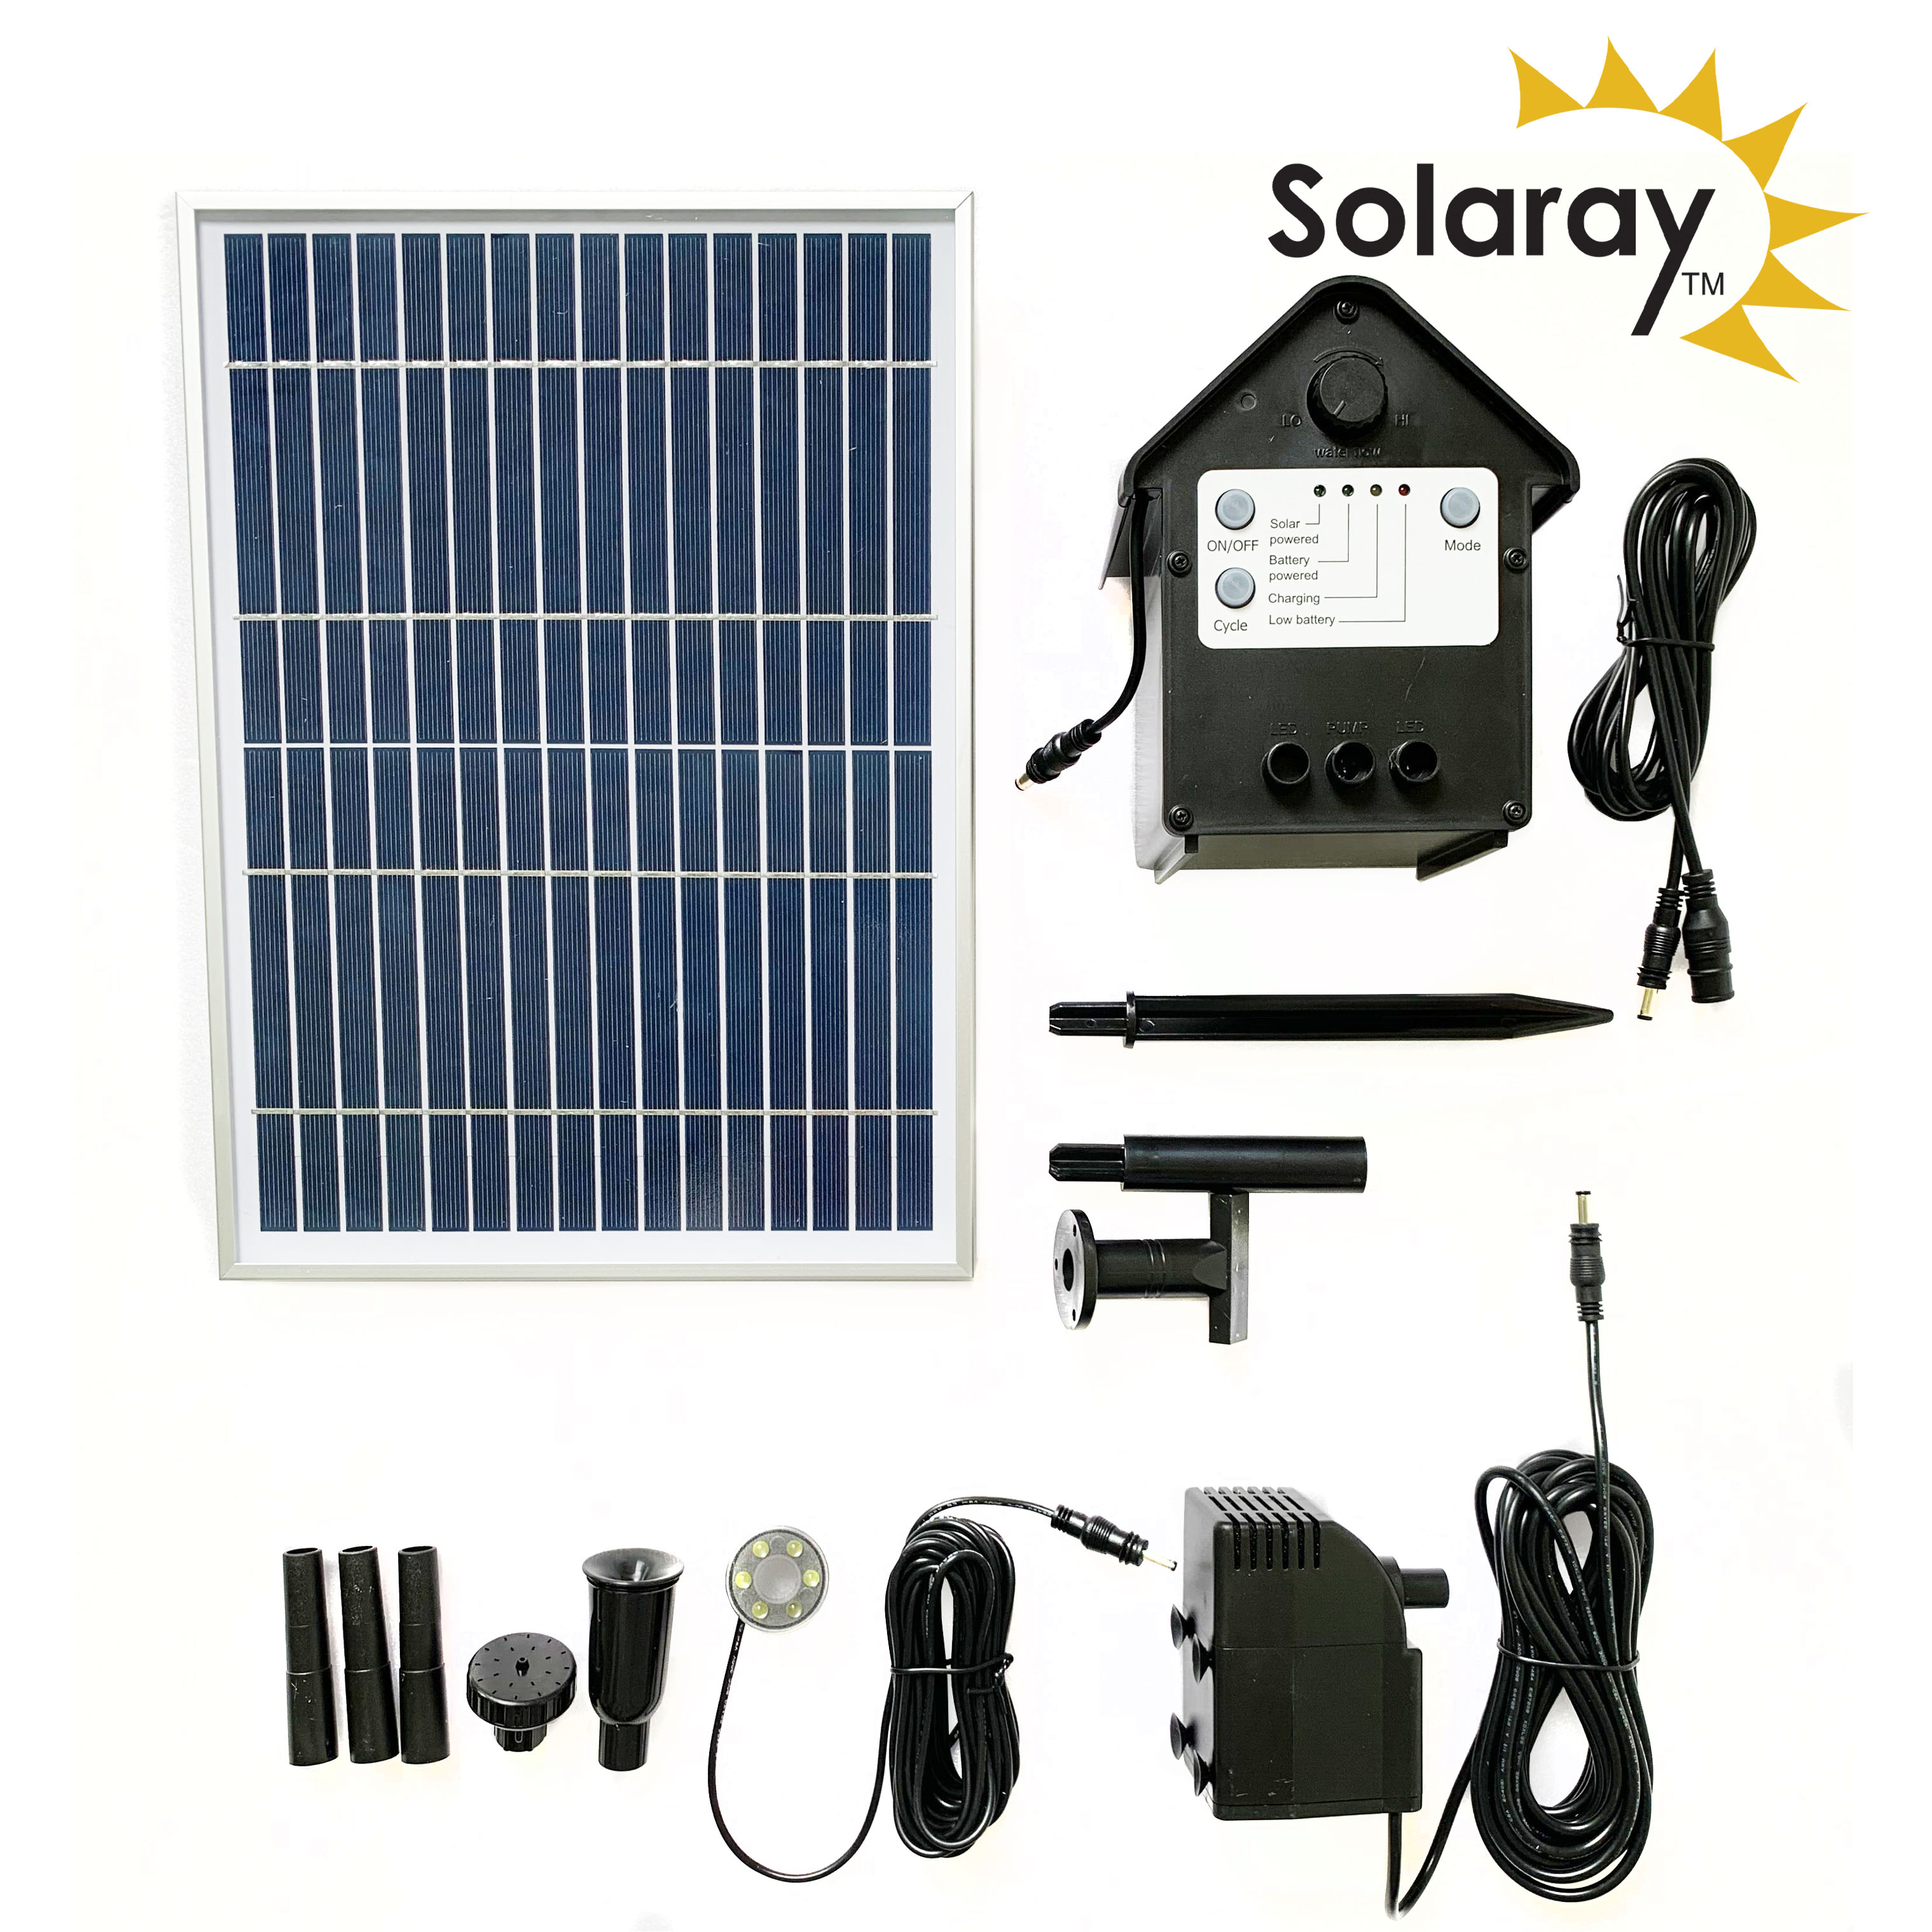 aankunnen pepermunt Veel gevaarlijke situaties Waterpomp Kit op Zonne-energie van Solaray™ - 800 l/u € 159,99